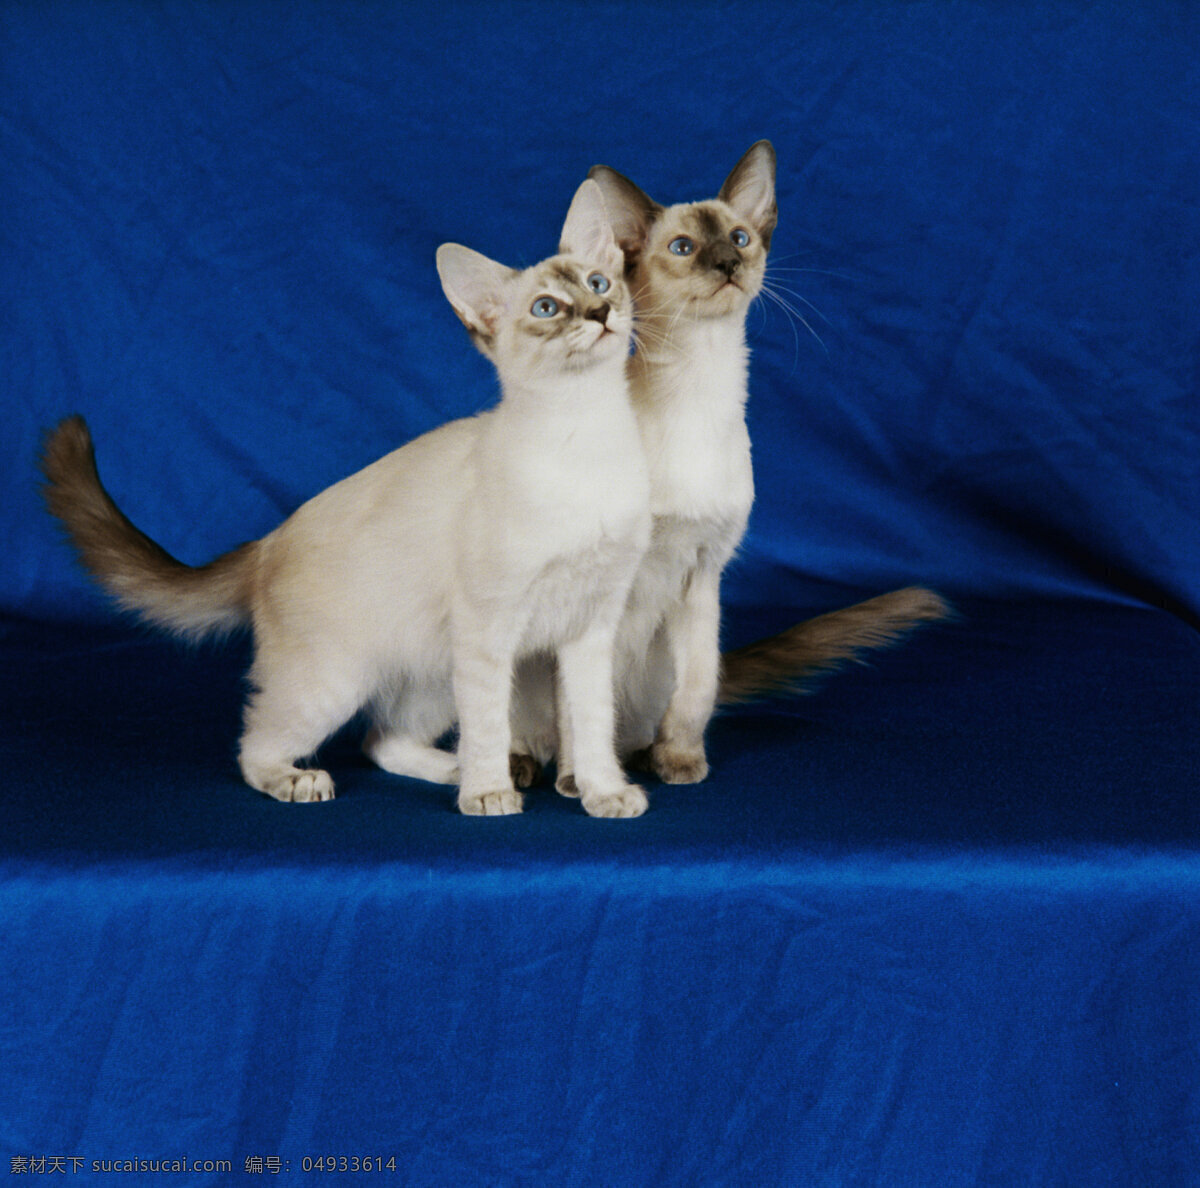 两 只 向上 看 小猫 两只 向上看 动物 宠物 白色 陆地动物 生物世界 蓝色